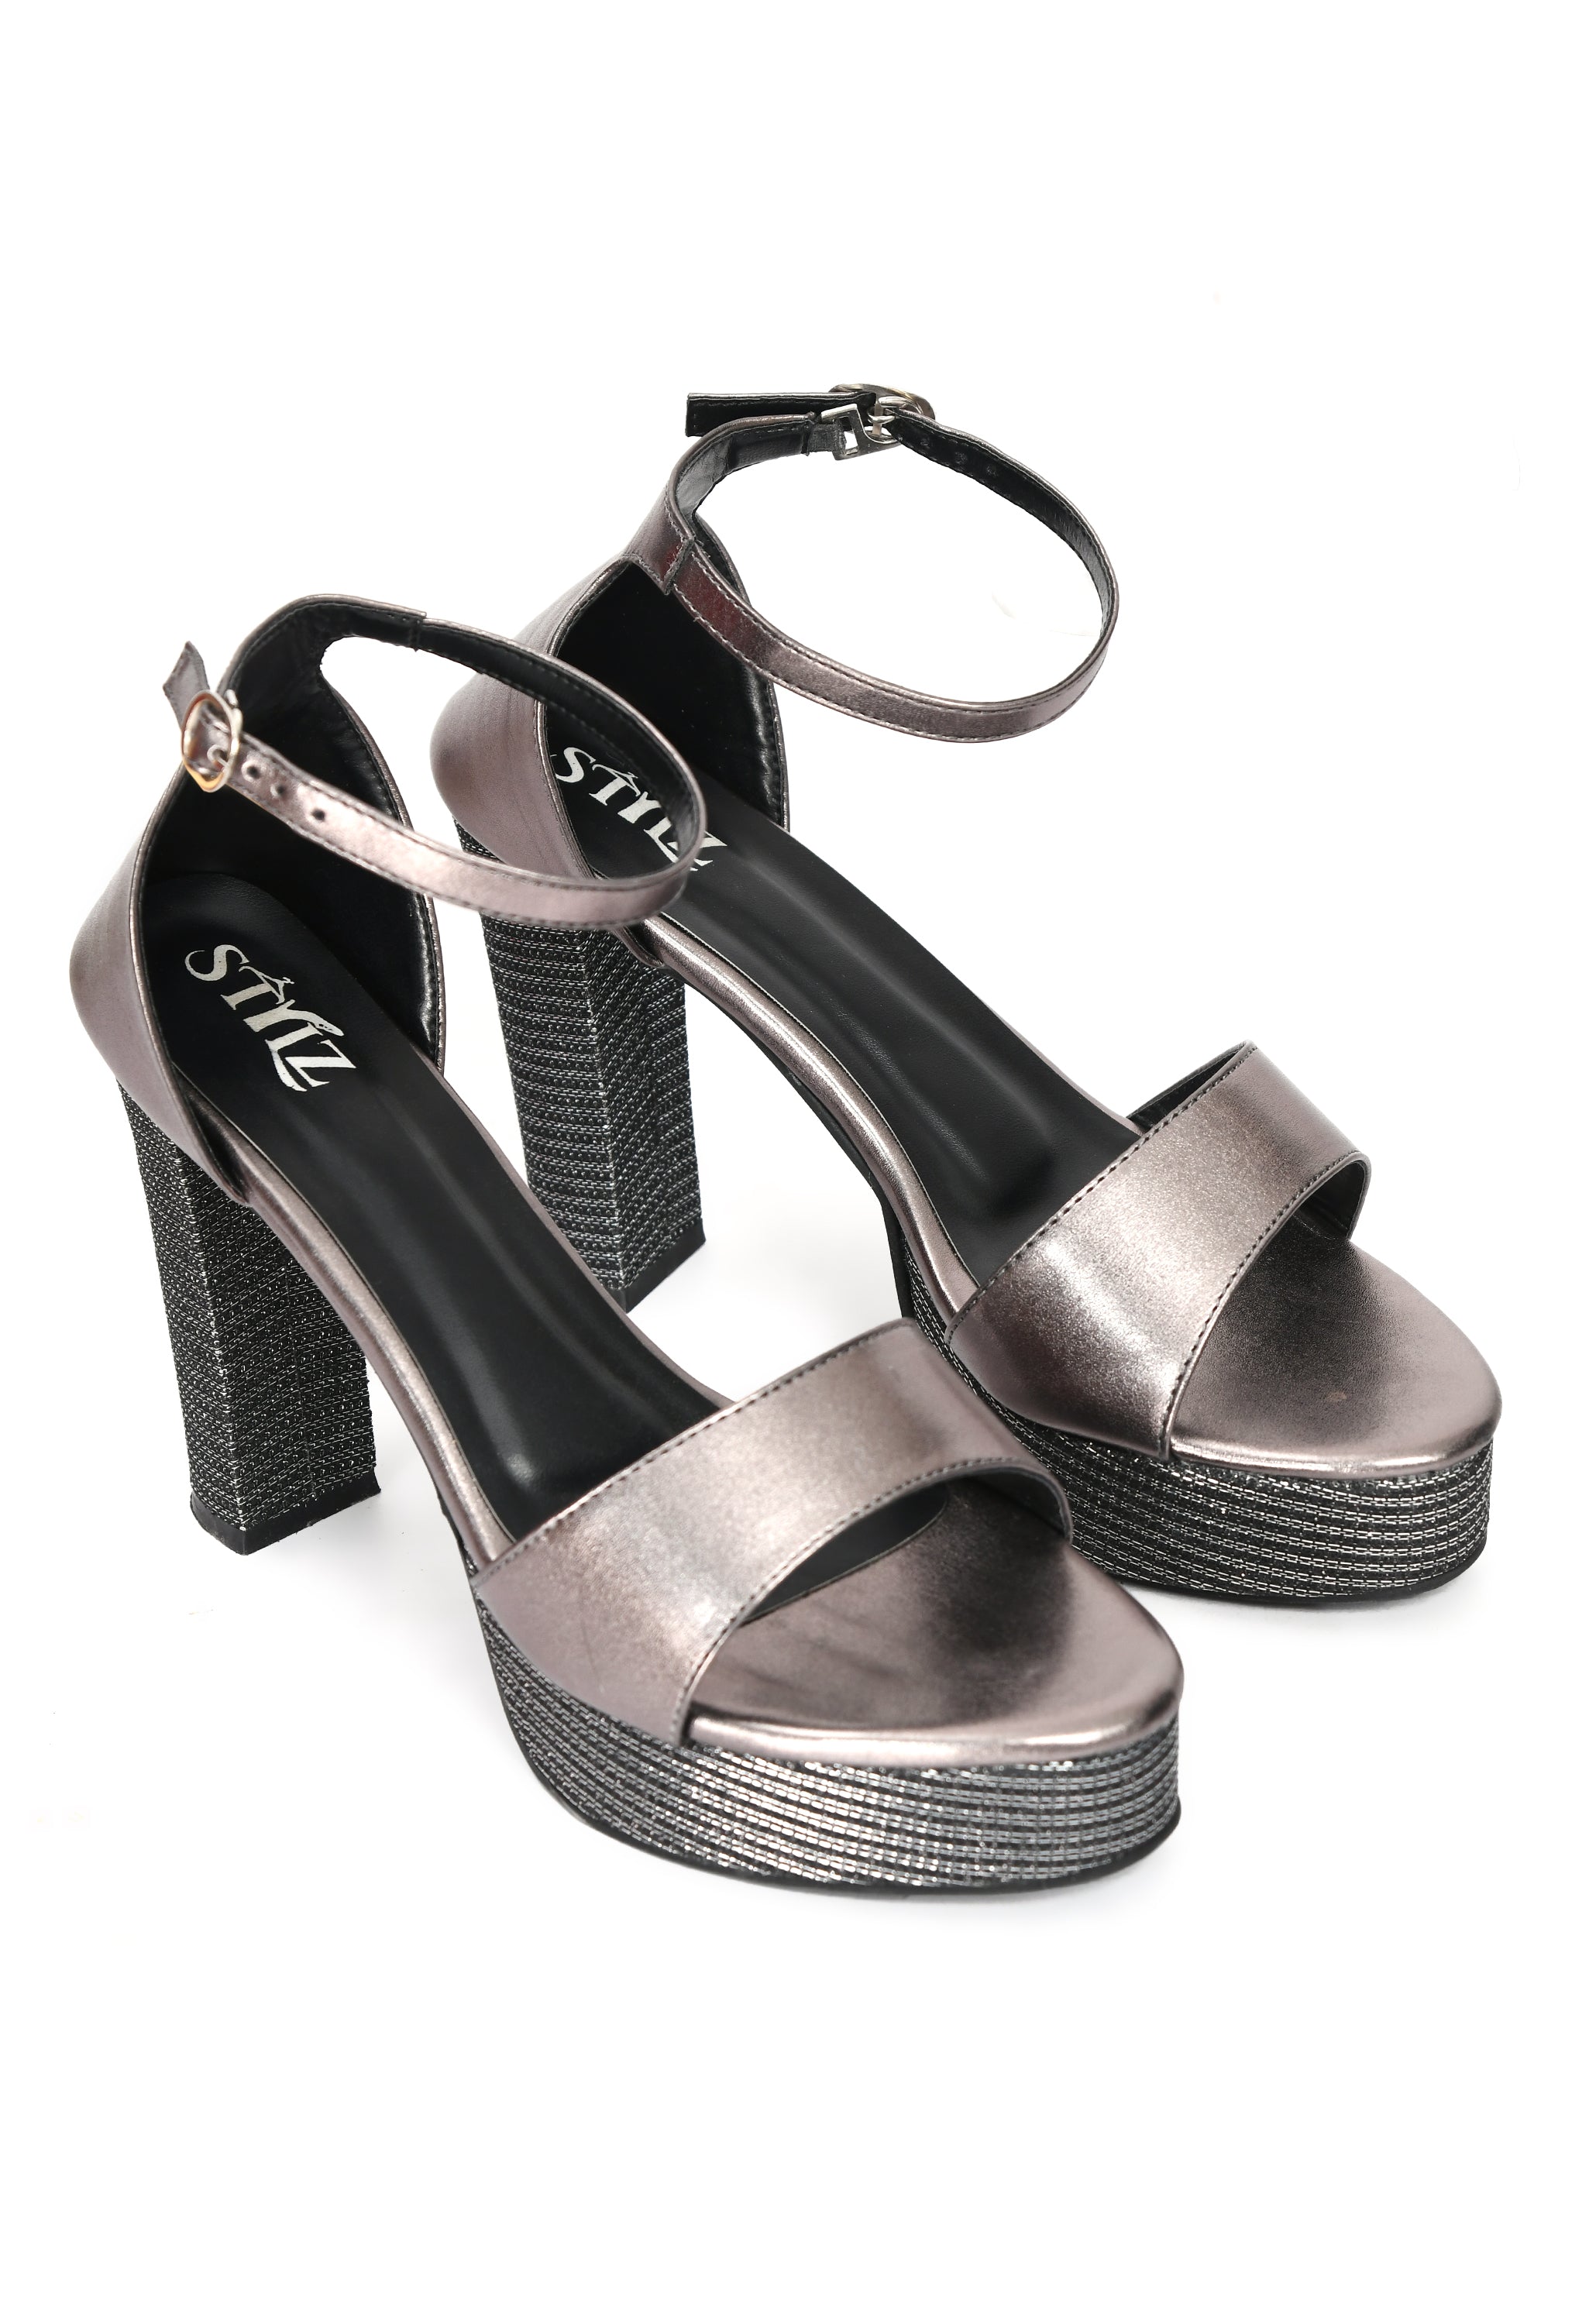 STYLZ Textured Silver 5-inch Designer Ankle Strap Platform Block Heel